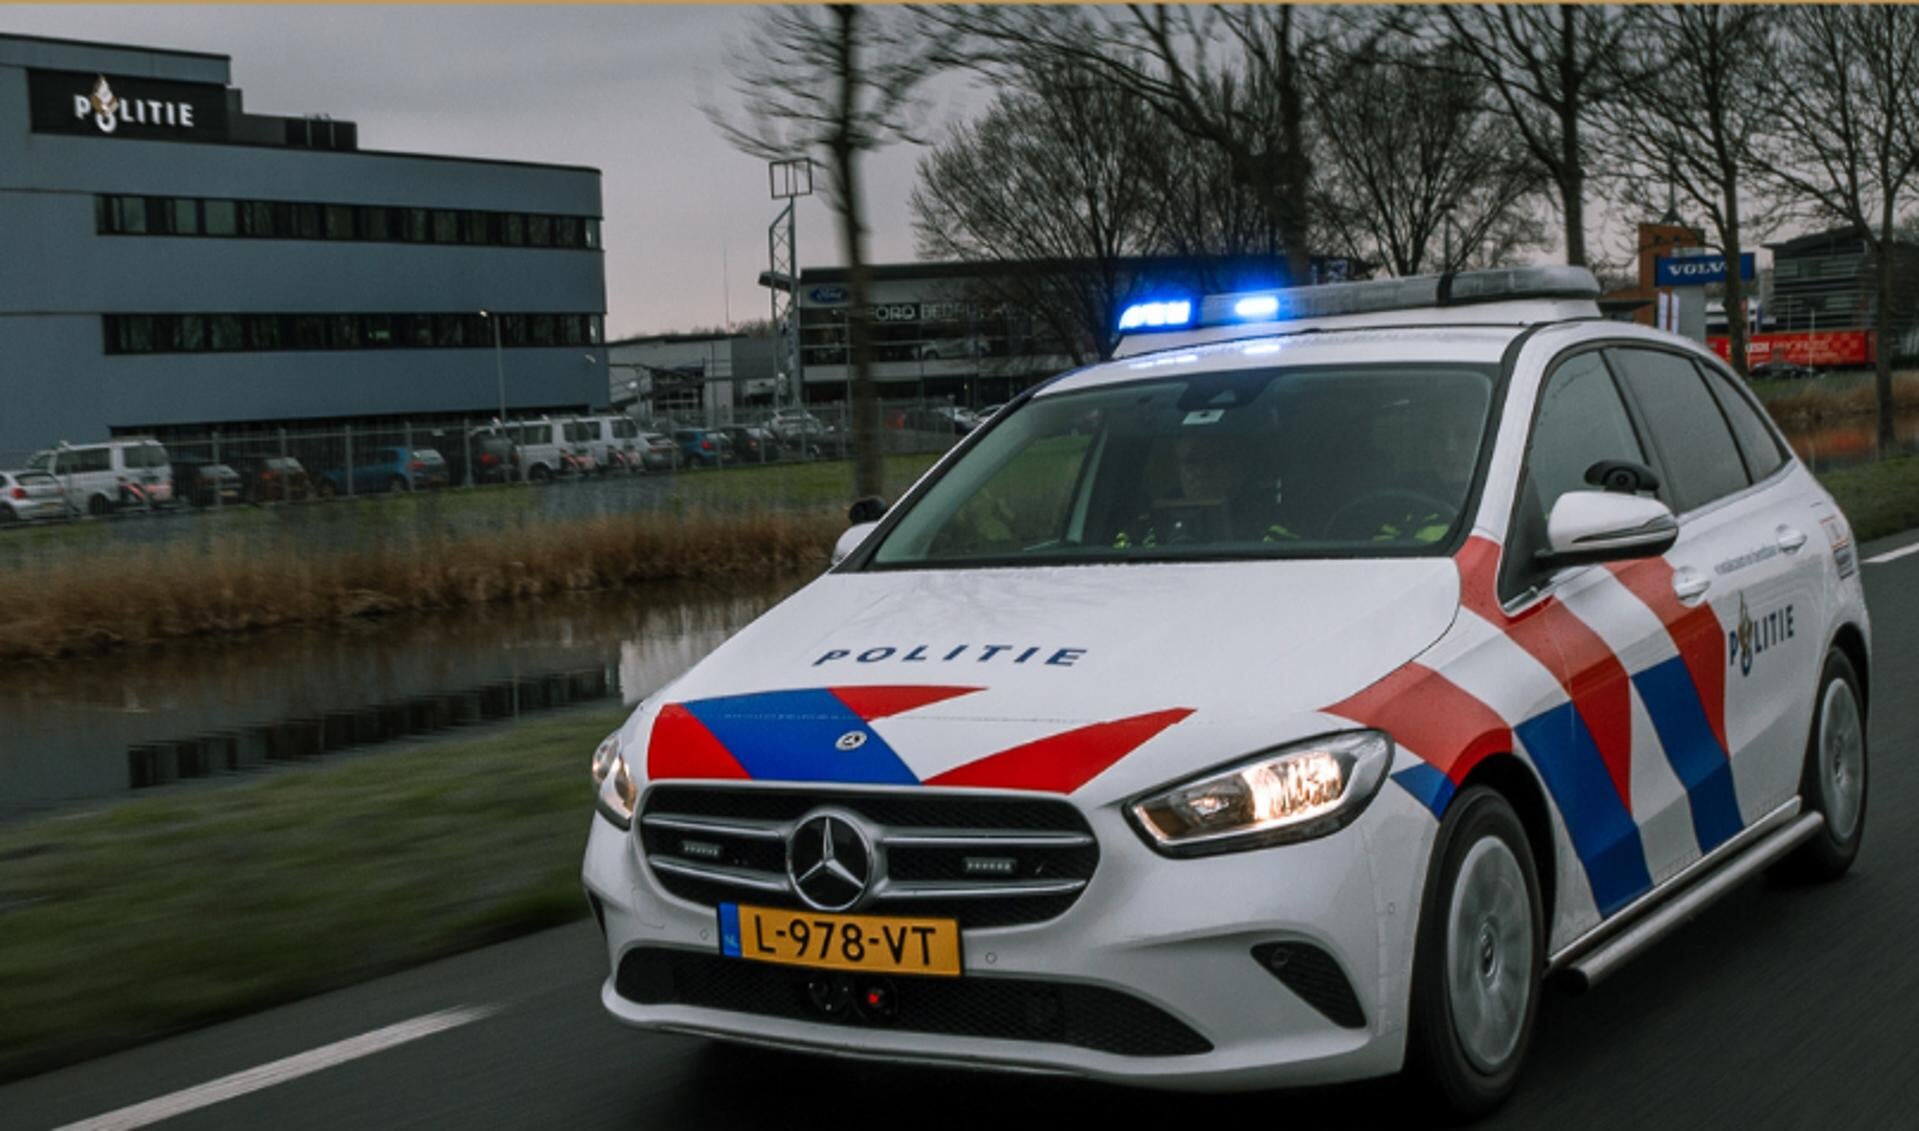 De politie rijdt sinds september vorig jaar niet meer vanaf de Waterlandlaan maar vanaf Component in de Baanstee.